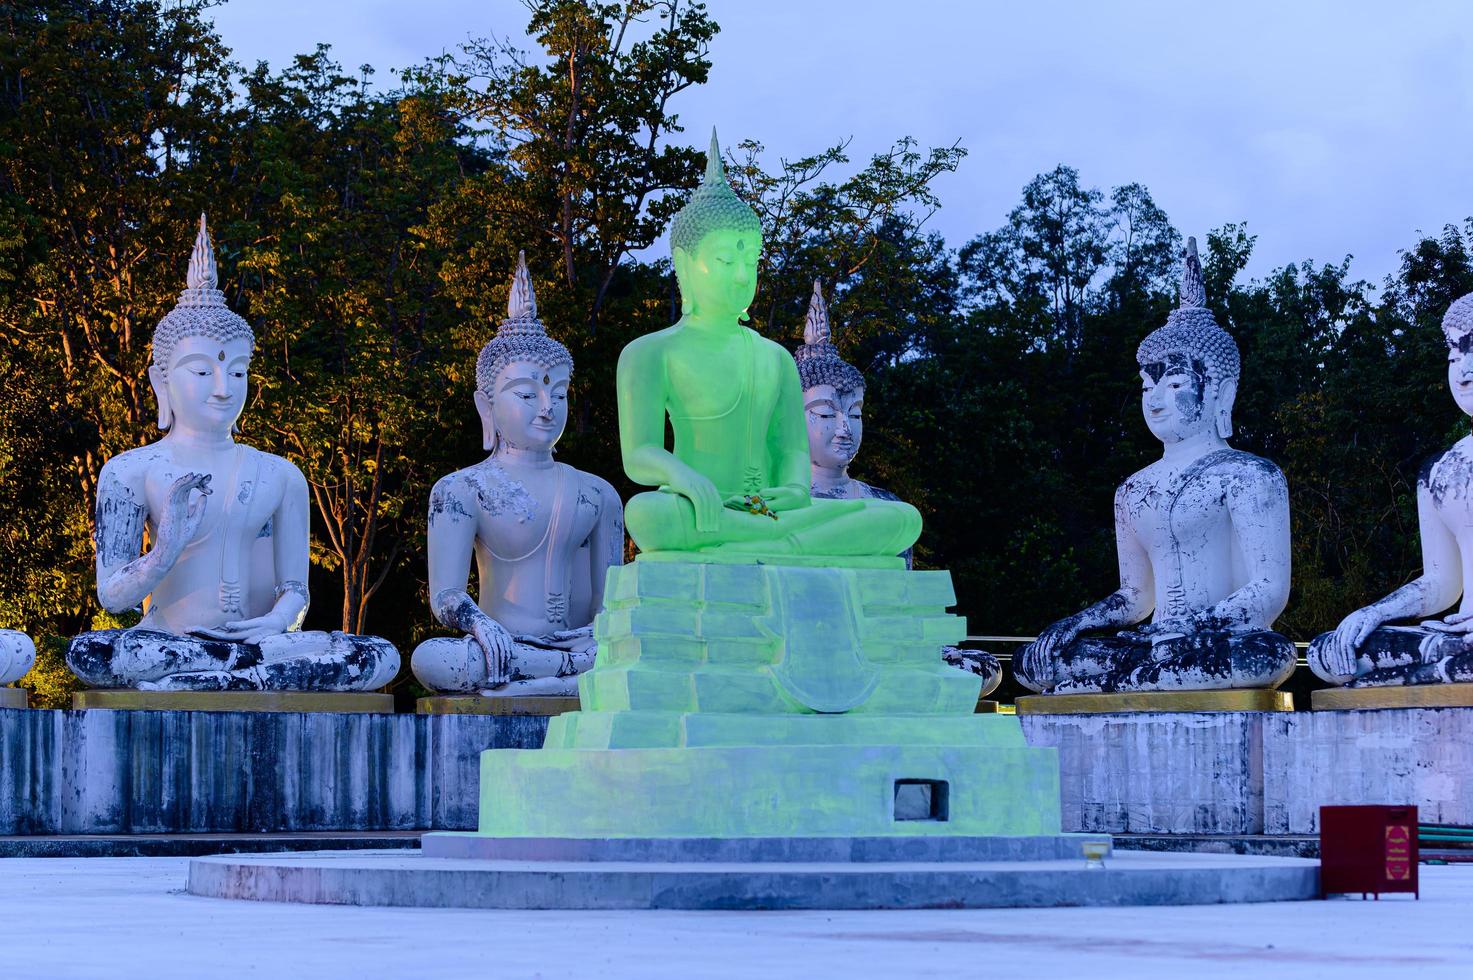 watpapromyan boeddhistische tempel respect, kalmeert de geest. in thailand, provincie chachoengsao foto